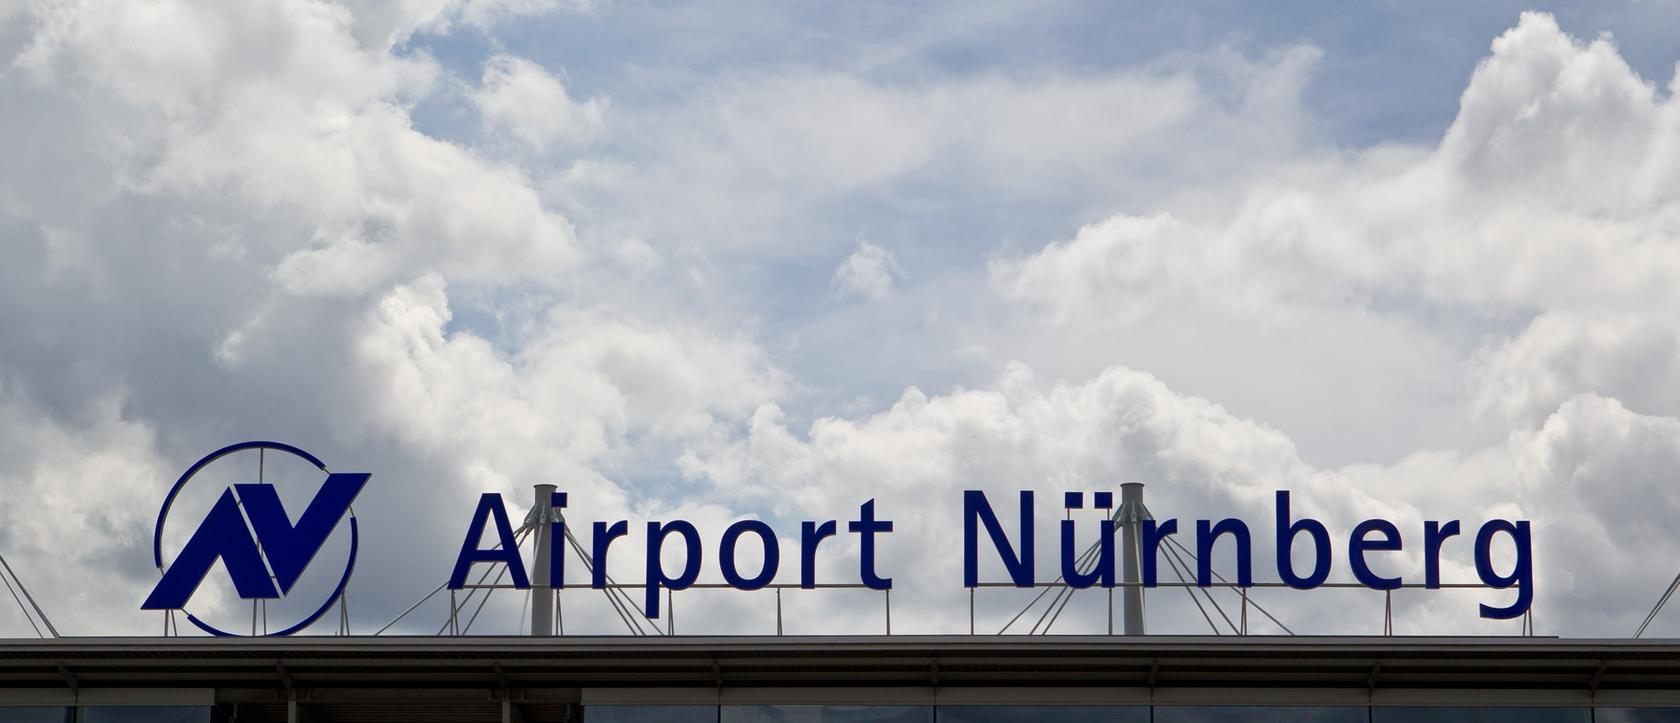 Bekommt bald einen berühmten Namenspaten: Der Nürnberger Airport, wird nach Albrecht Dürer benannt.